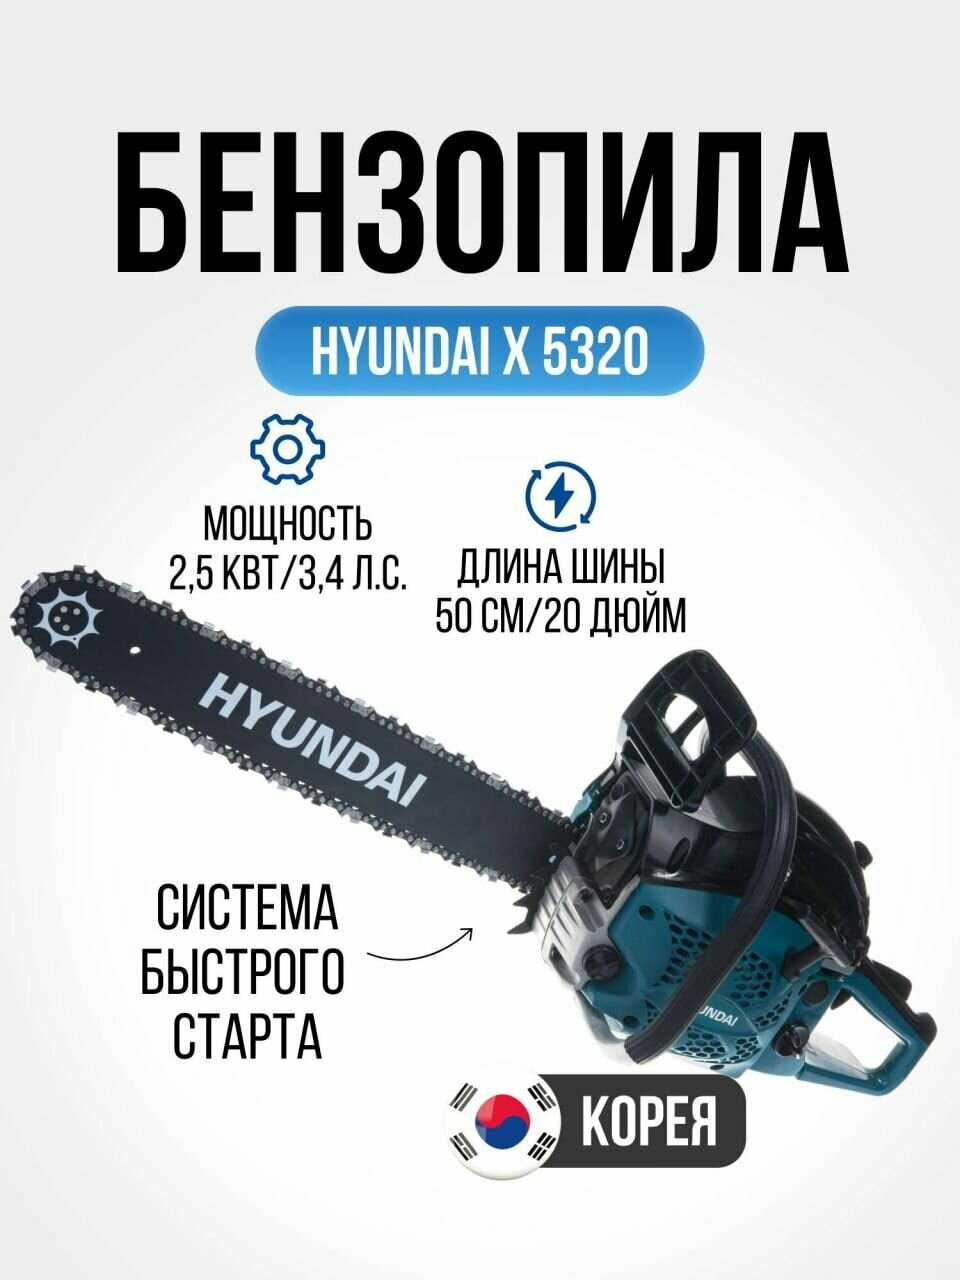 Бензопила цепная Hyundai Х 5320-АИ92 (мощность 2.5 кВт, шина 50 см, шаг цепи 0,325 дюйма, 76 звеньев), садовый ручной инструмент